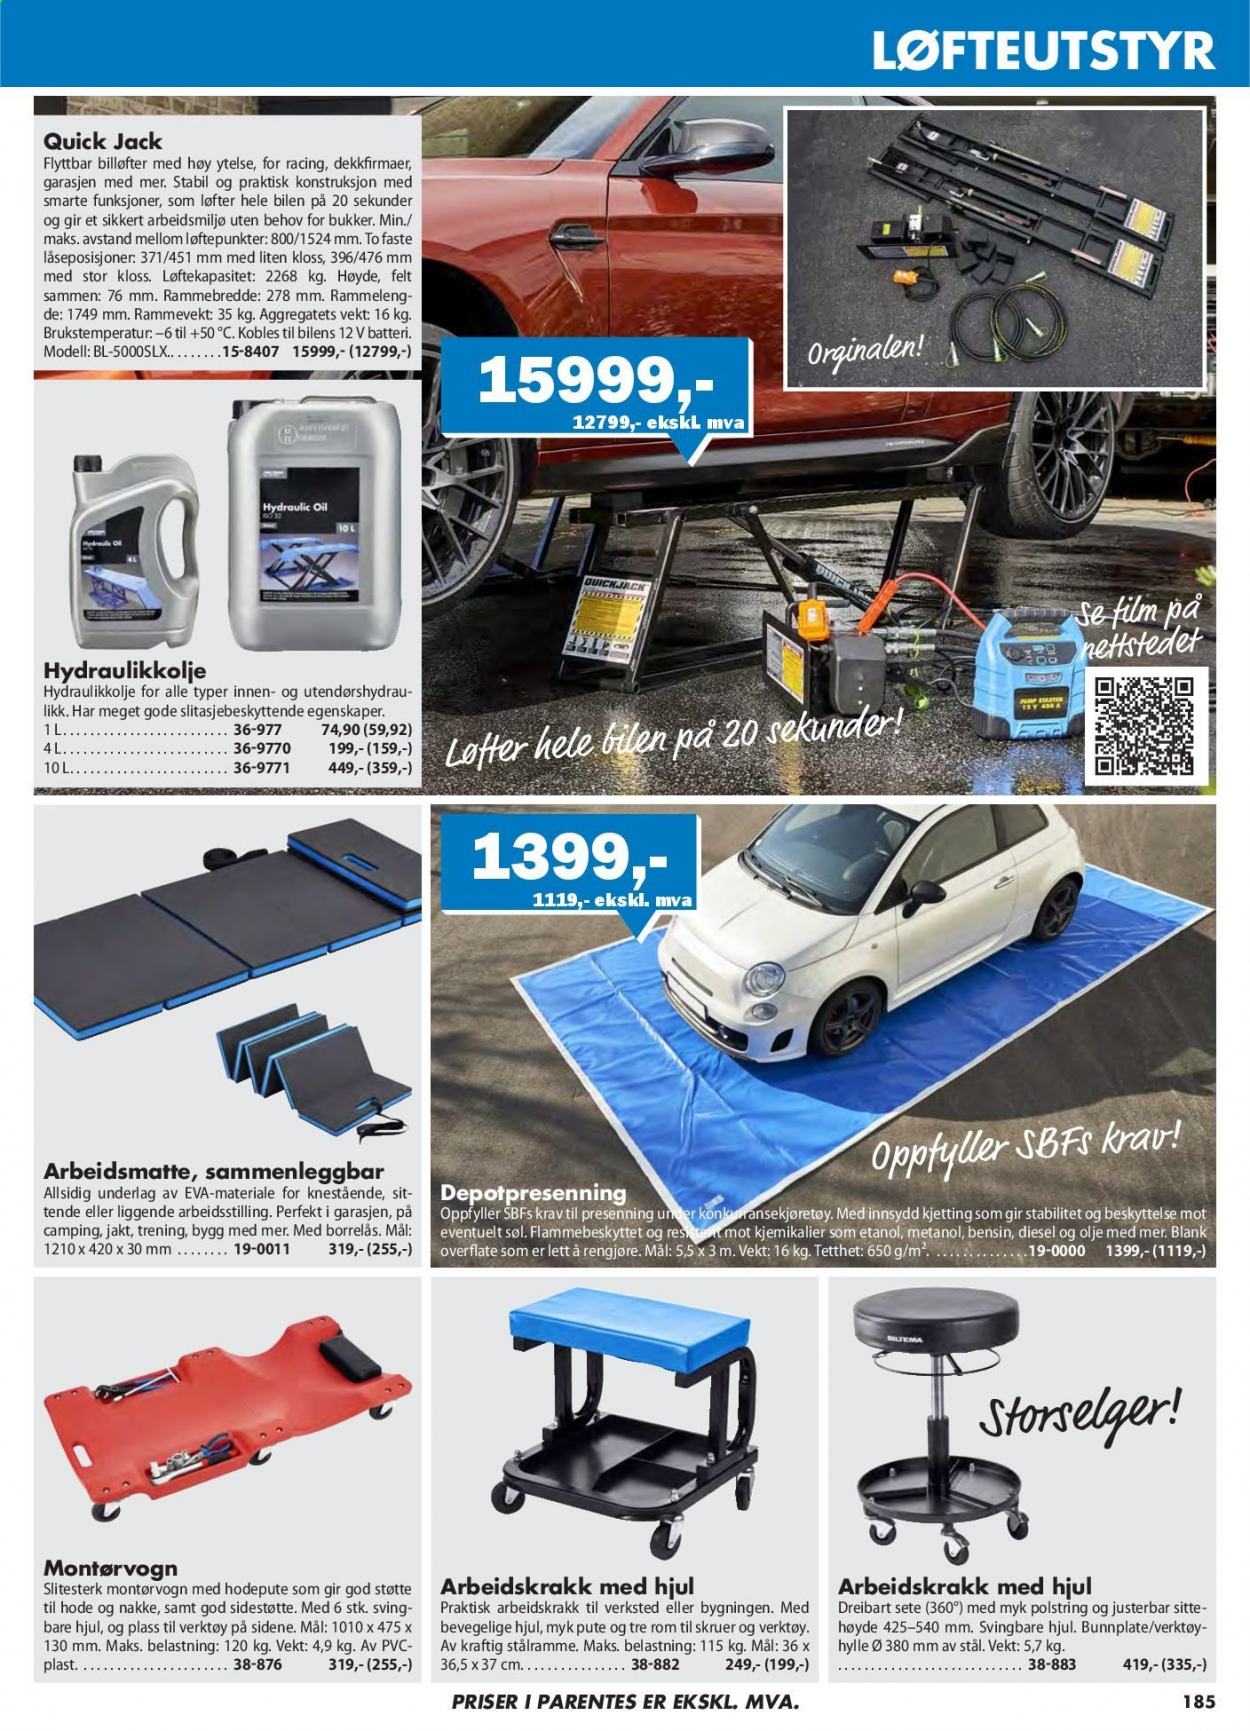 thumbnail - Kundeavis Biltema - Produkter fra tilbudsaviser - batteri, pute, hylle, skruer, verktøy, presenning. Side 185.